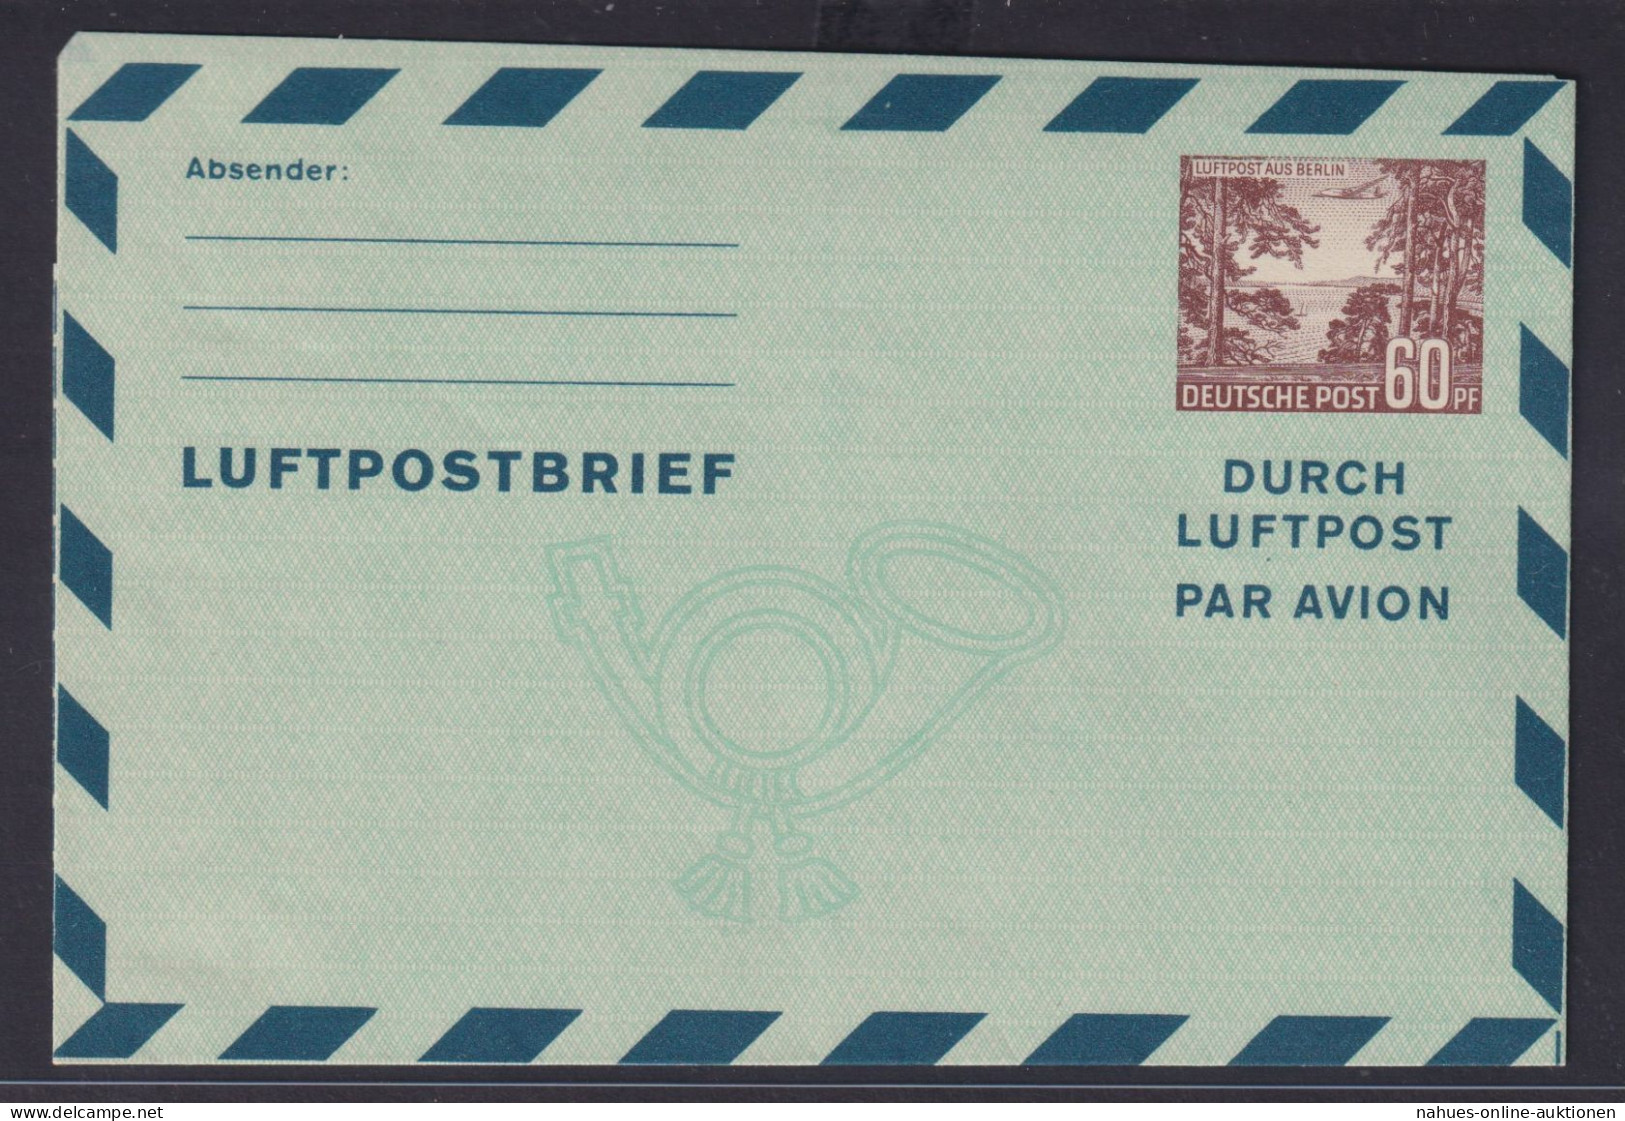 Berlin Brief Ganzsache Luftpostfaltbrief Aerogramm 60 Pfg. Bauten Kat.-Wert 60,- - Postcards - Used